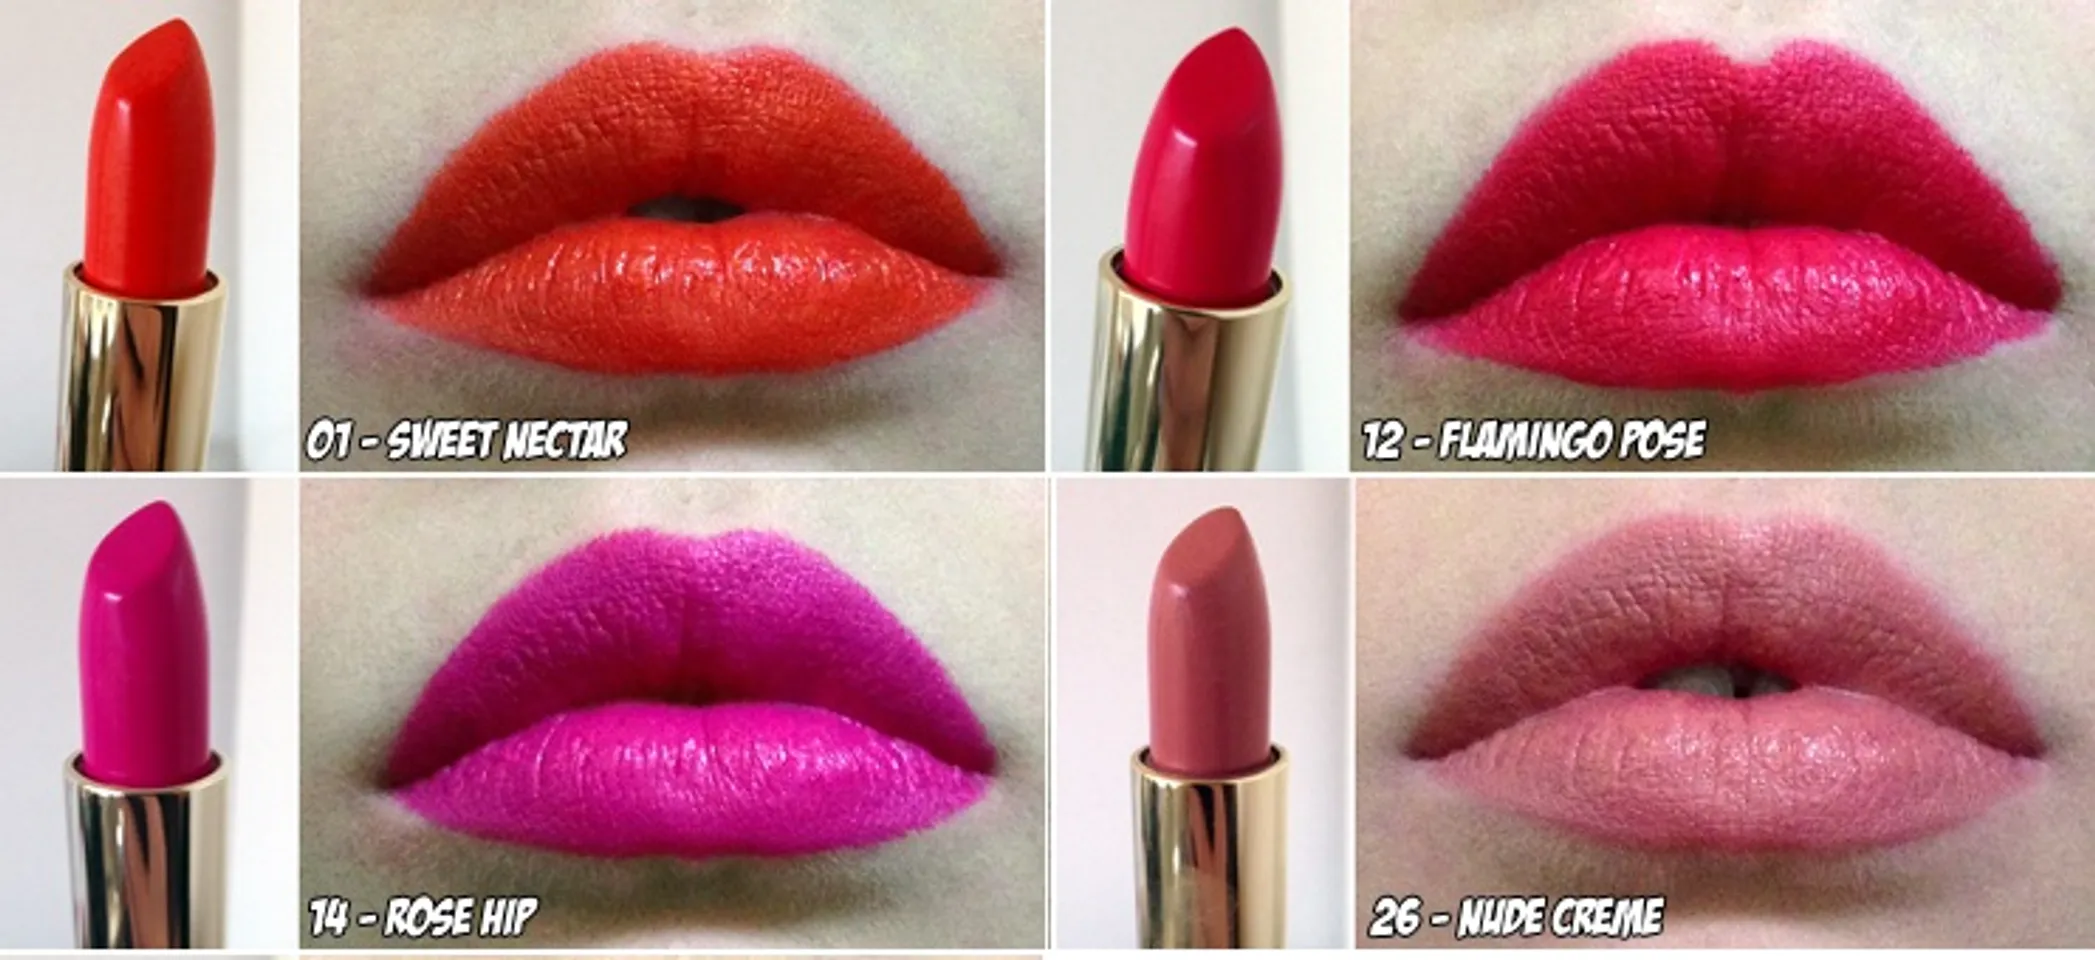 Son Milani Color Statement Lipstic có 1 số màu cực xinh xắn